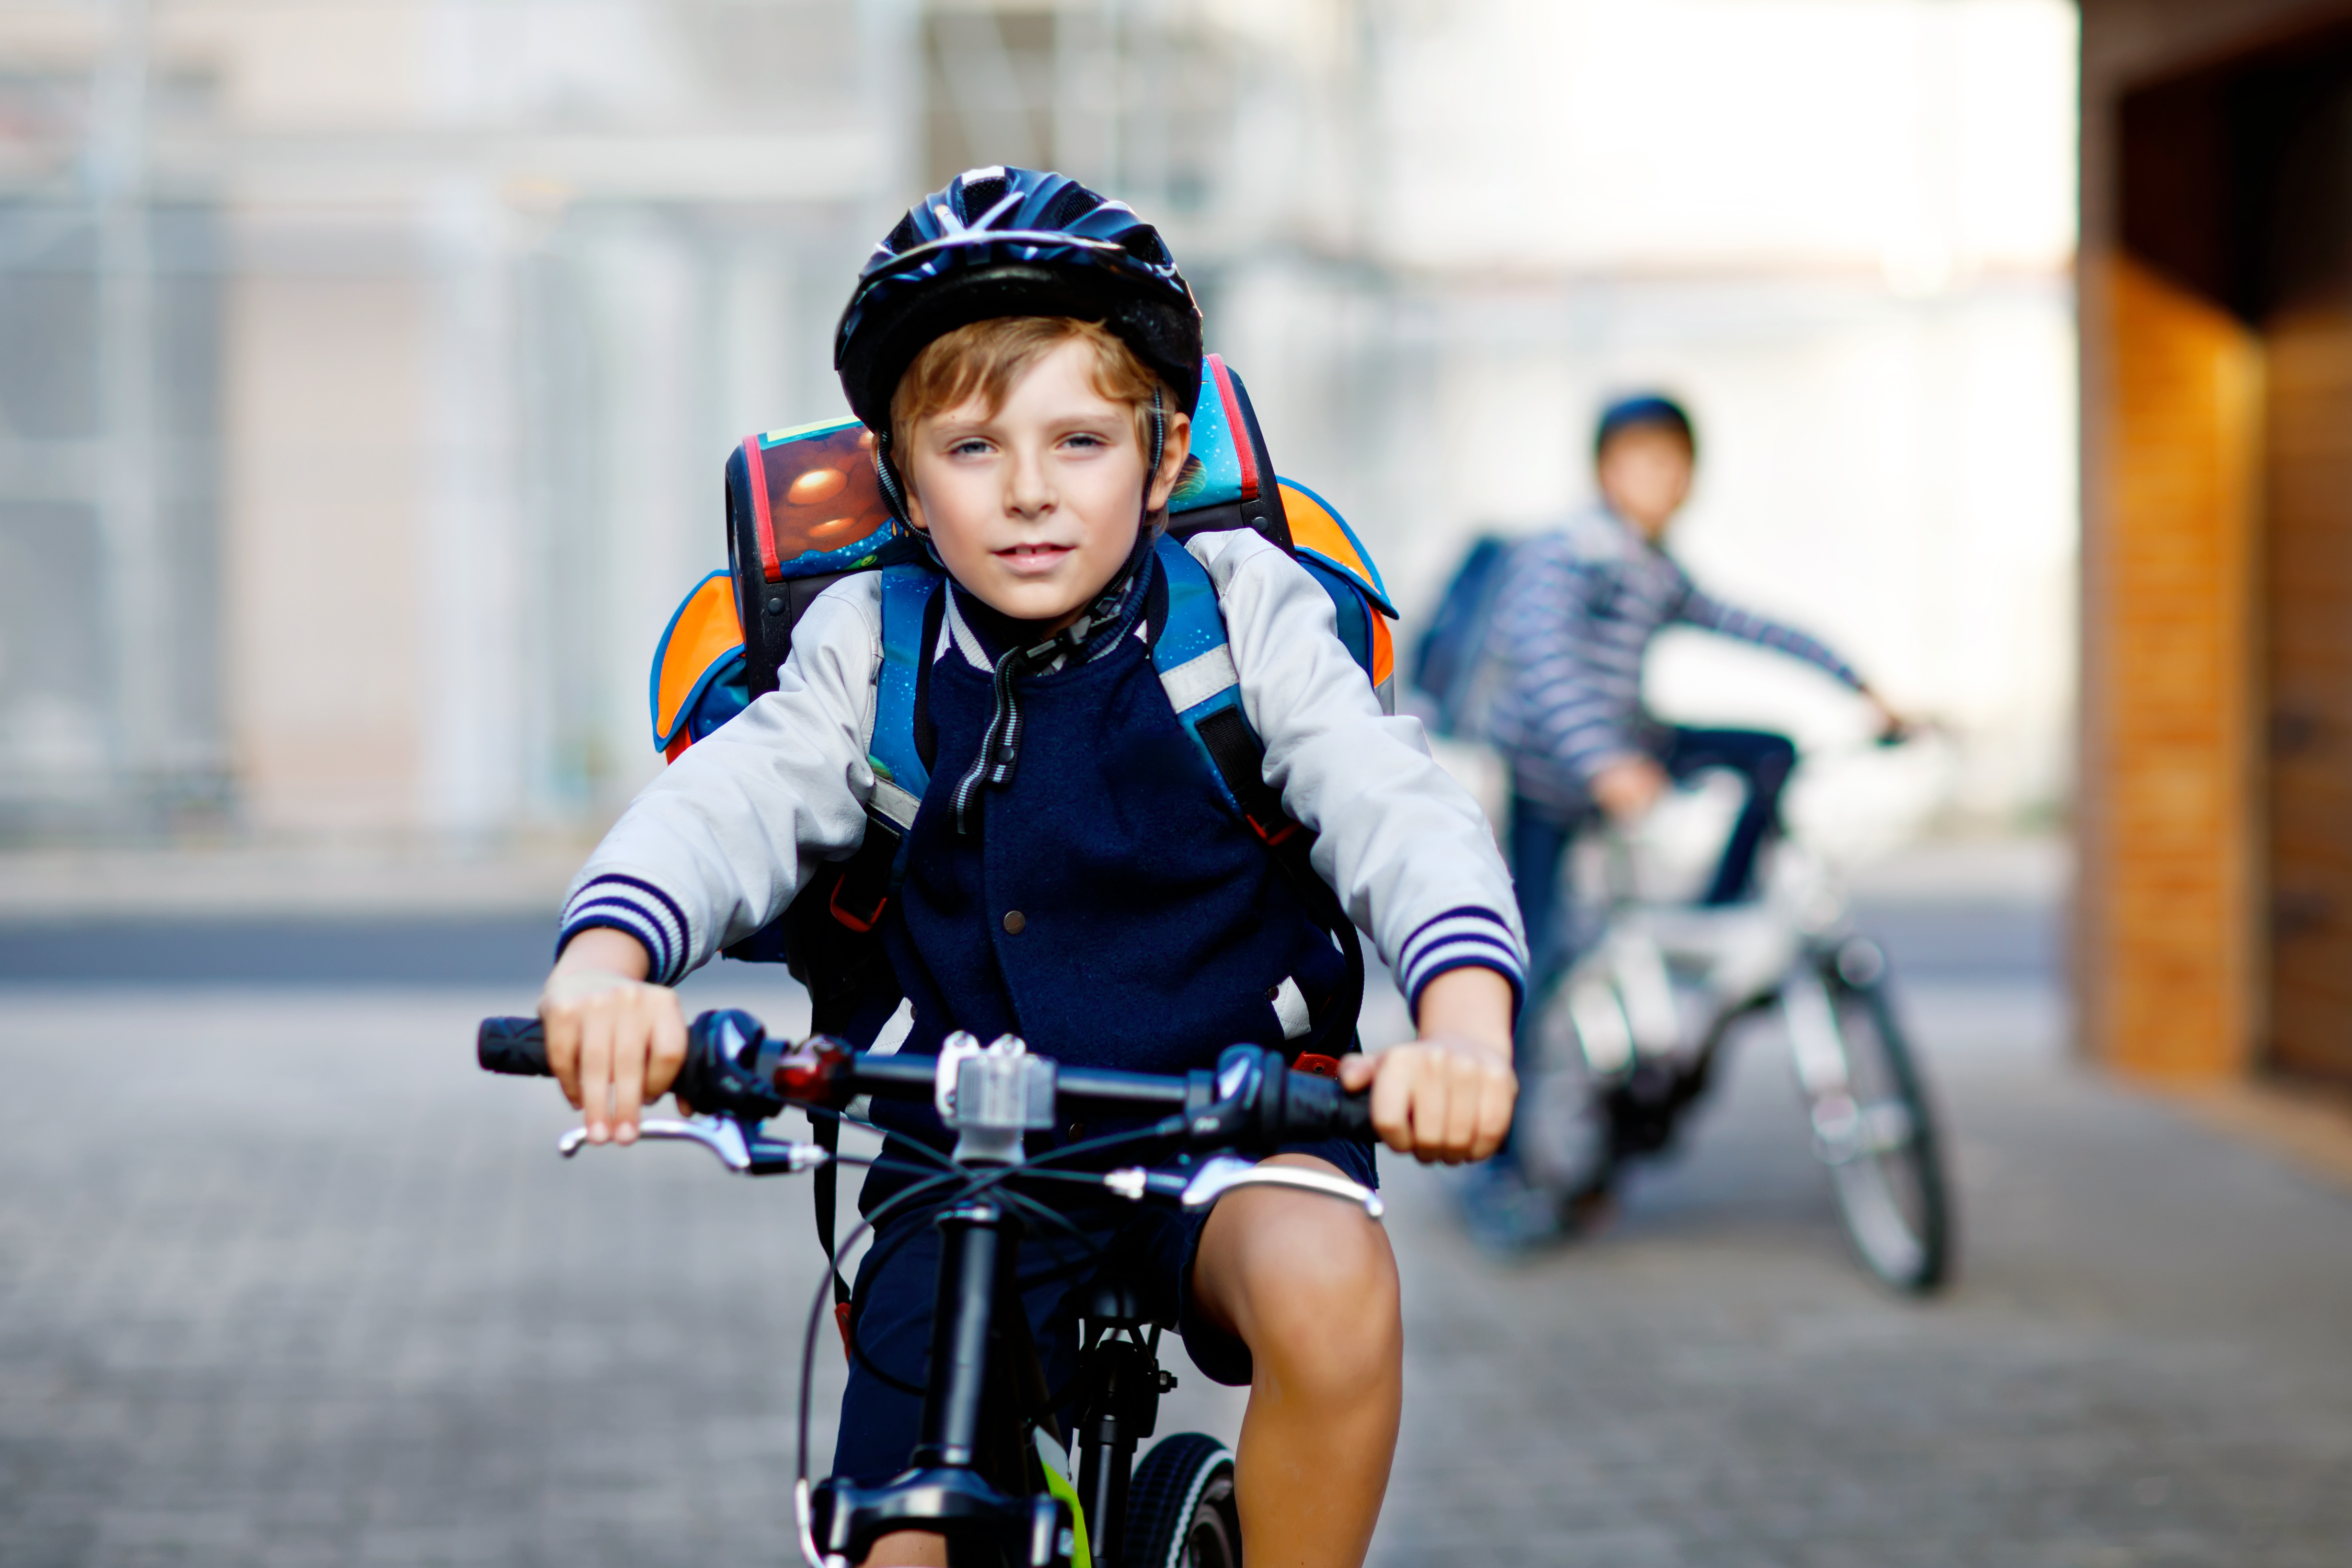 Ein Junge mit Helm und Ranzen auf dem Fahrrad